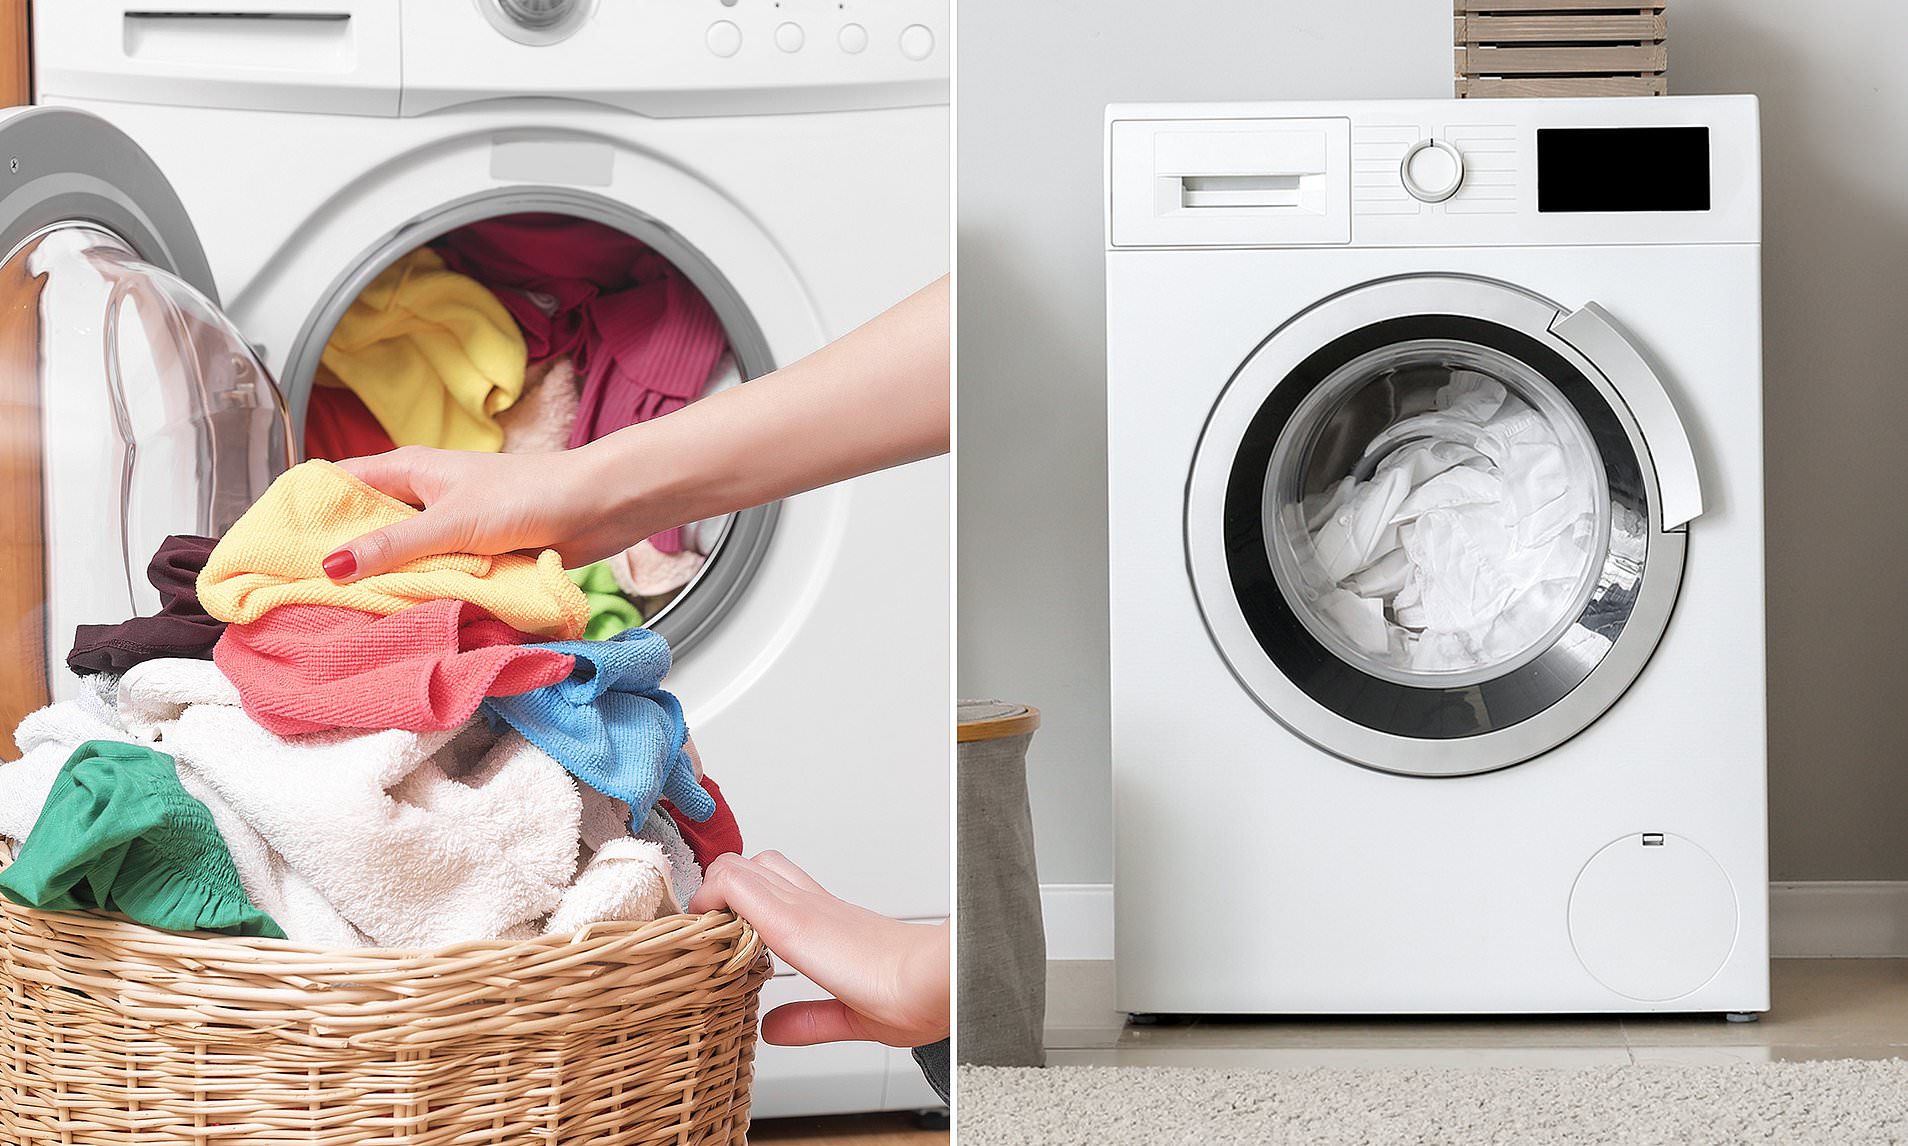 Dùng máy giặt đúng cách: Nên và không nên làm gì để đảm bảo máy chạy bền lâu, quần áo lúc nào cũng tinh tươm thơm ngát - Ảnh 7.